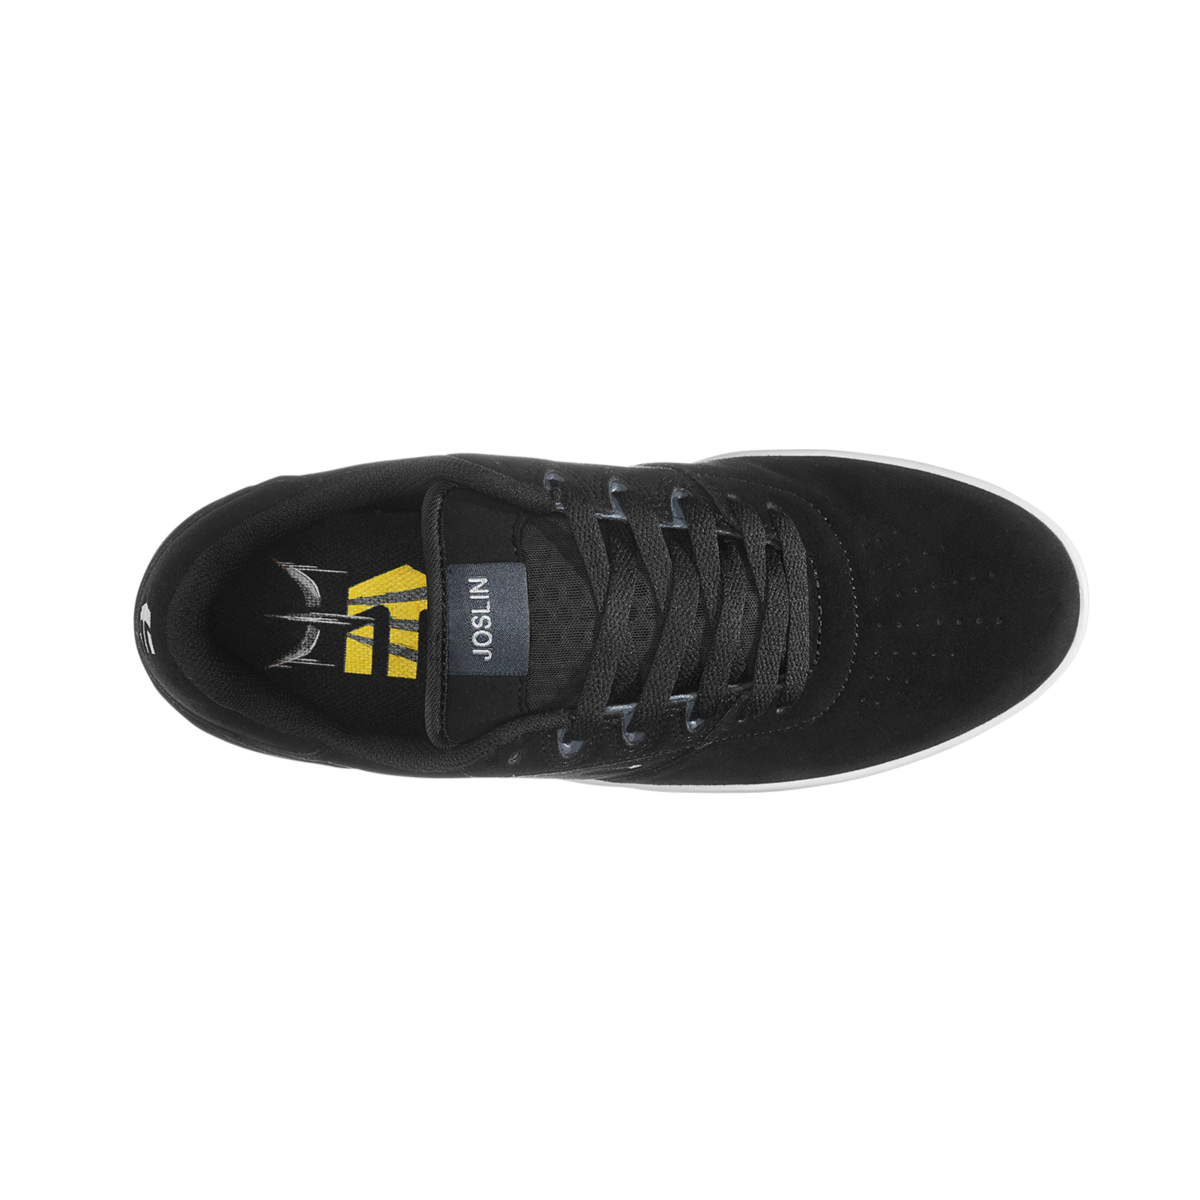 ETNIES 4102000144 001 JOSL1N MN'S (Medium) Black Suede & Synthetic Skate Shoes